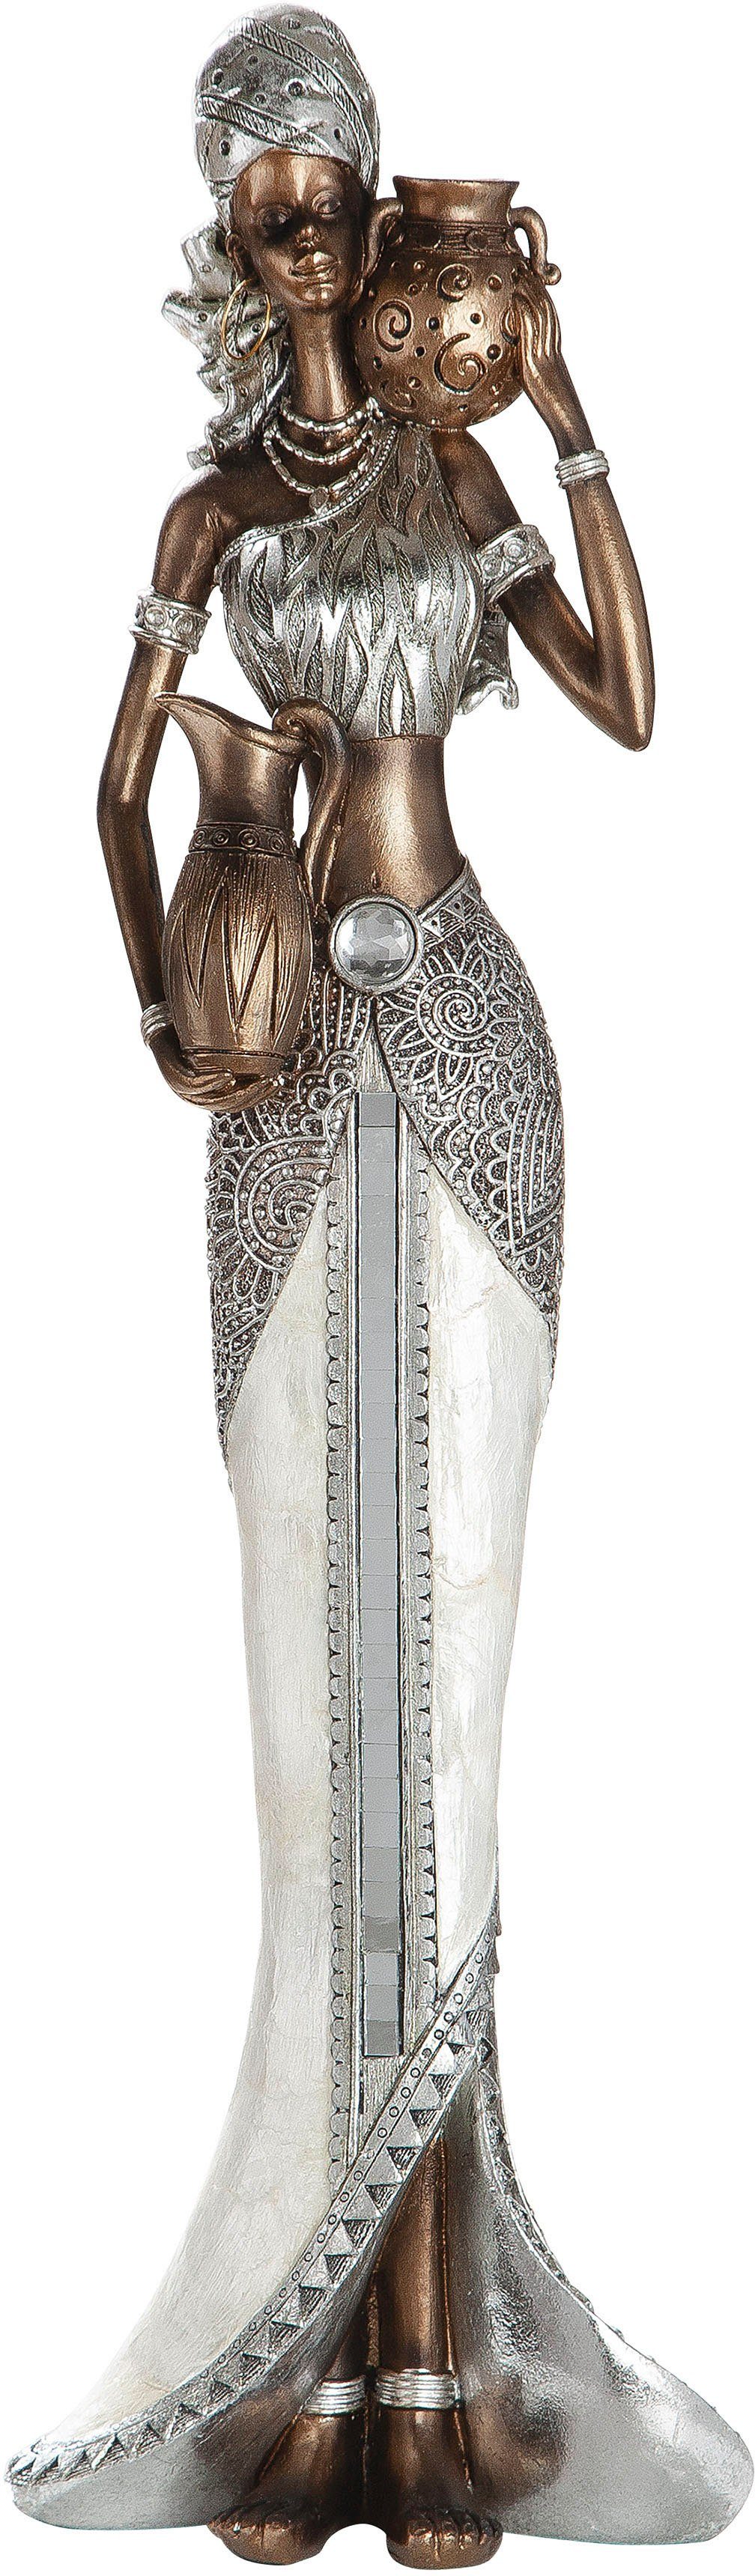 GILDE Afrikafigur »Figur Sahel mit Perlmutt, silber« (1 Stück), Höhe 45 cm,  handbemalt, Wohnzimmer online kaufen | OTTO